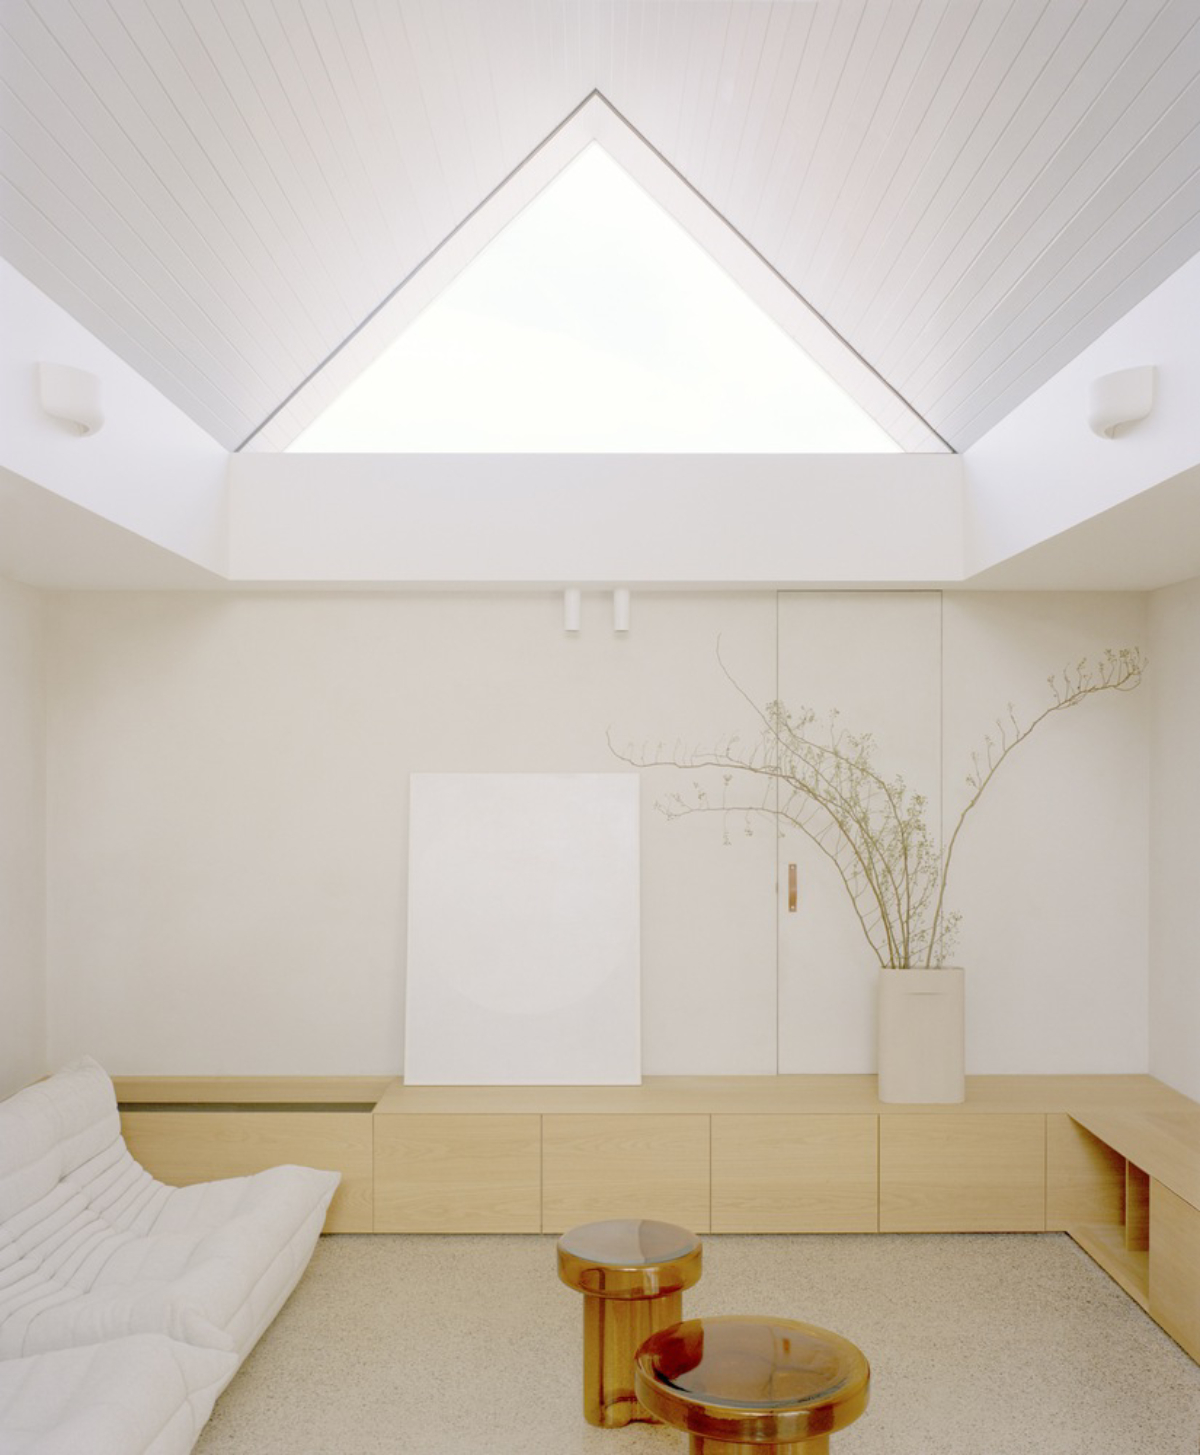 طراحی فضای داخلی خانه - استودیو معماری هشتی